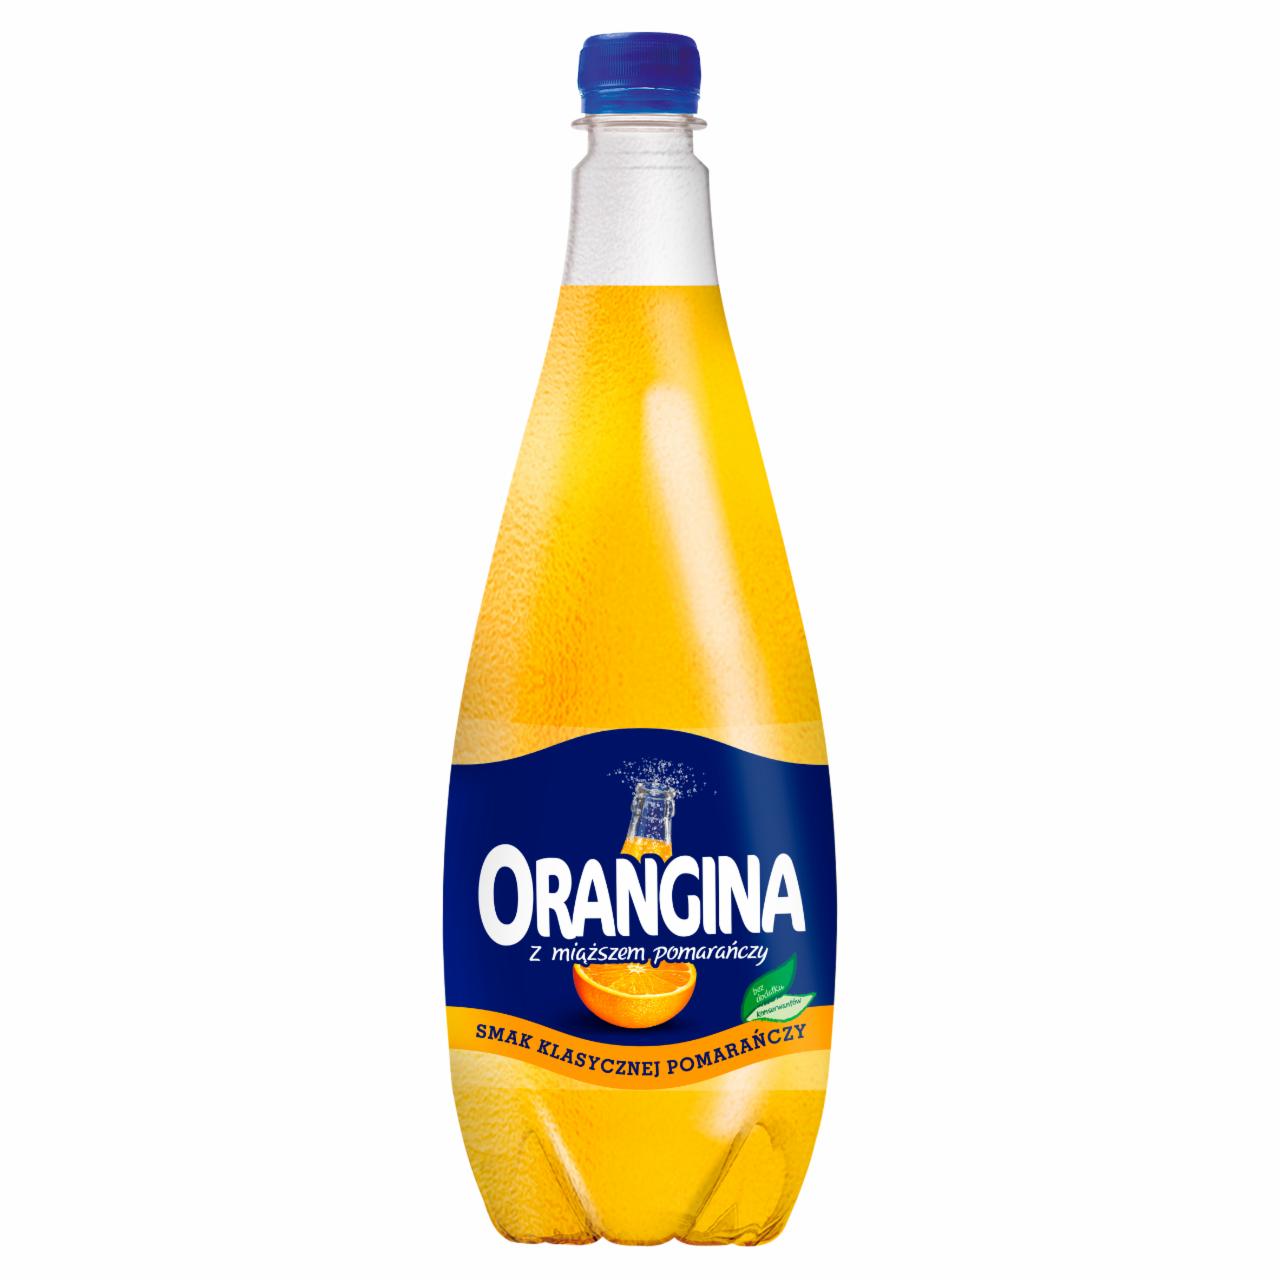 Zdjęcia - Orangina Napój gazowany smak klasycznej pomarańczy 1,4 l